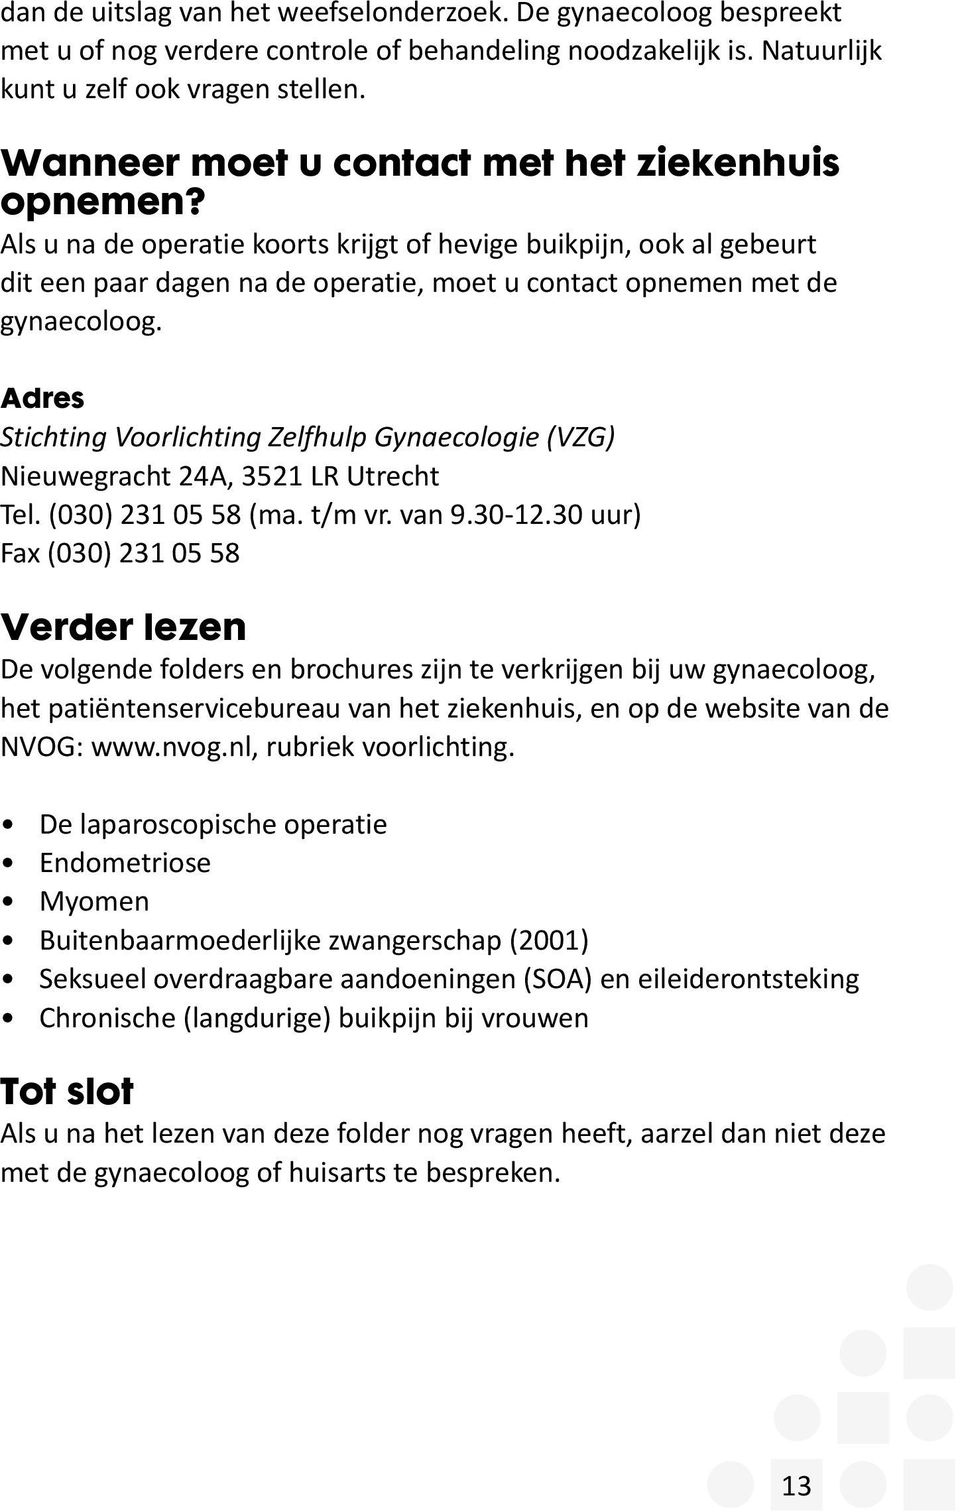 Adres Stichting Voorlichting Zelfhulp Gynaecologie (VZG) Nieuwegracht 24A, 3521 LR Utrecht Tel. (030) 231 05 58 (ma. t/m vr. van 9.30-12.